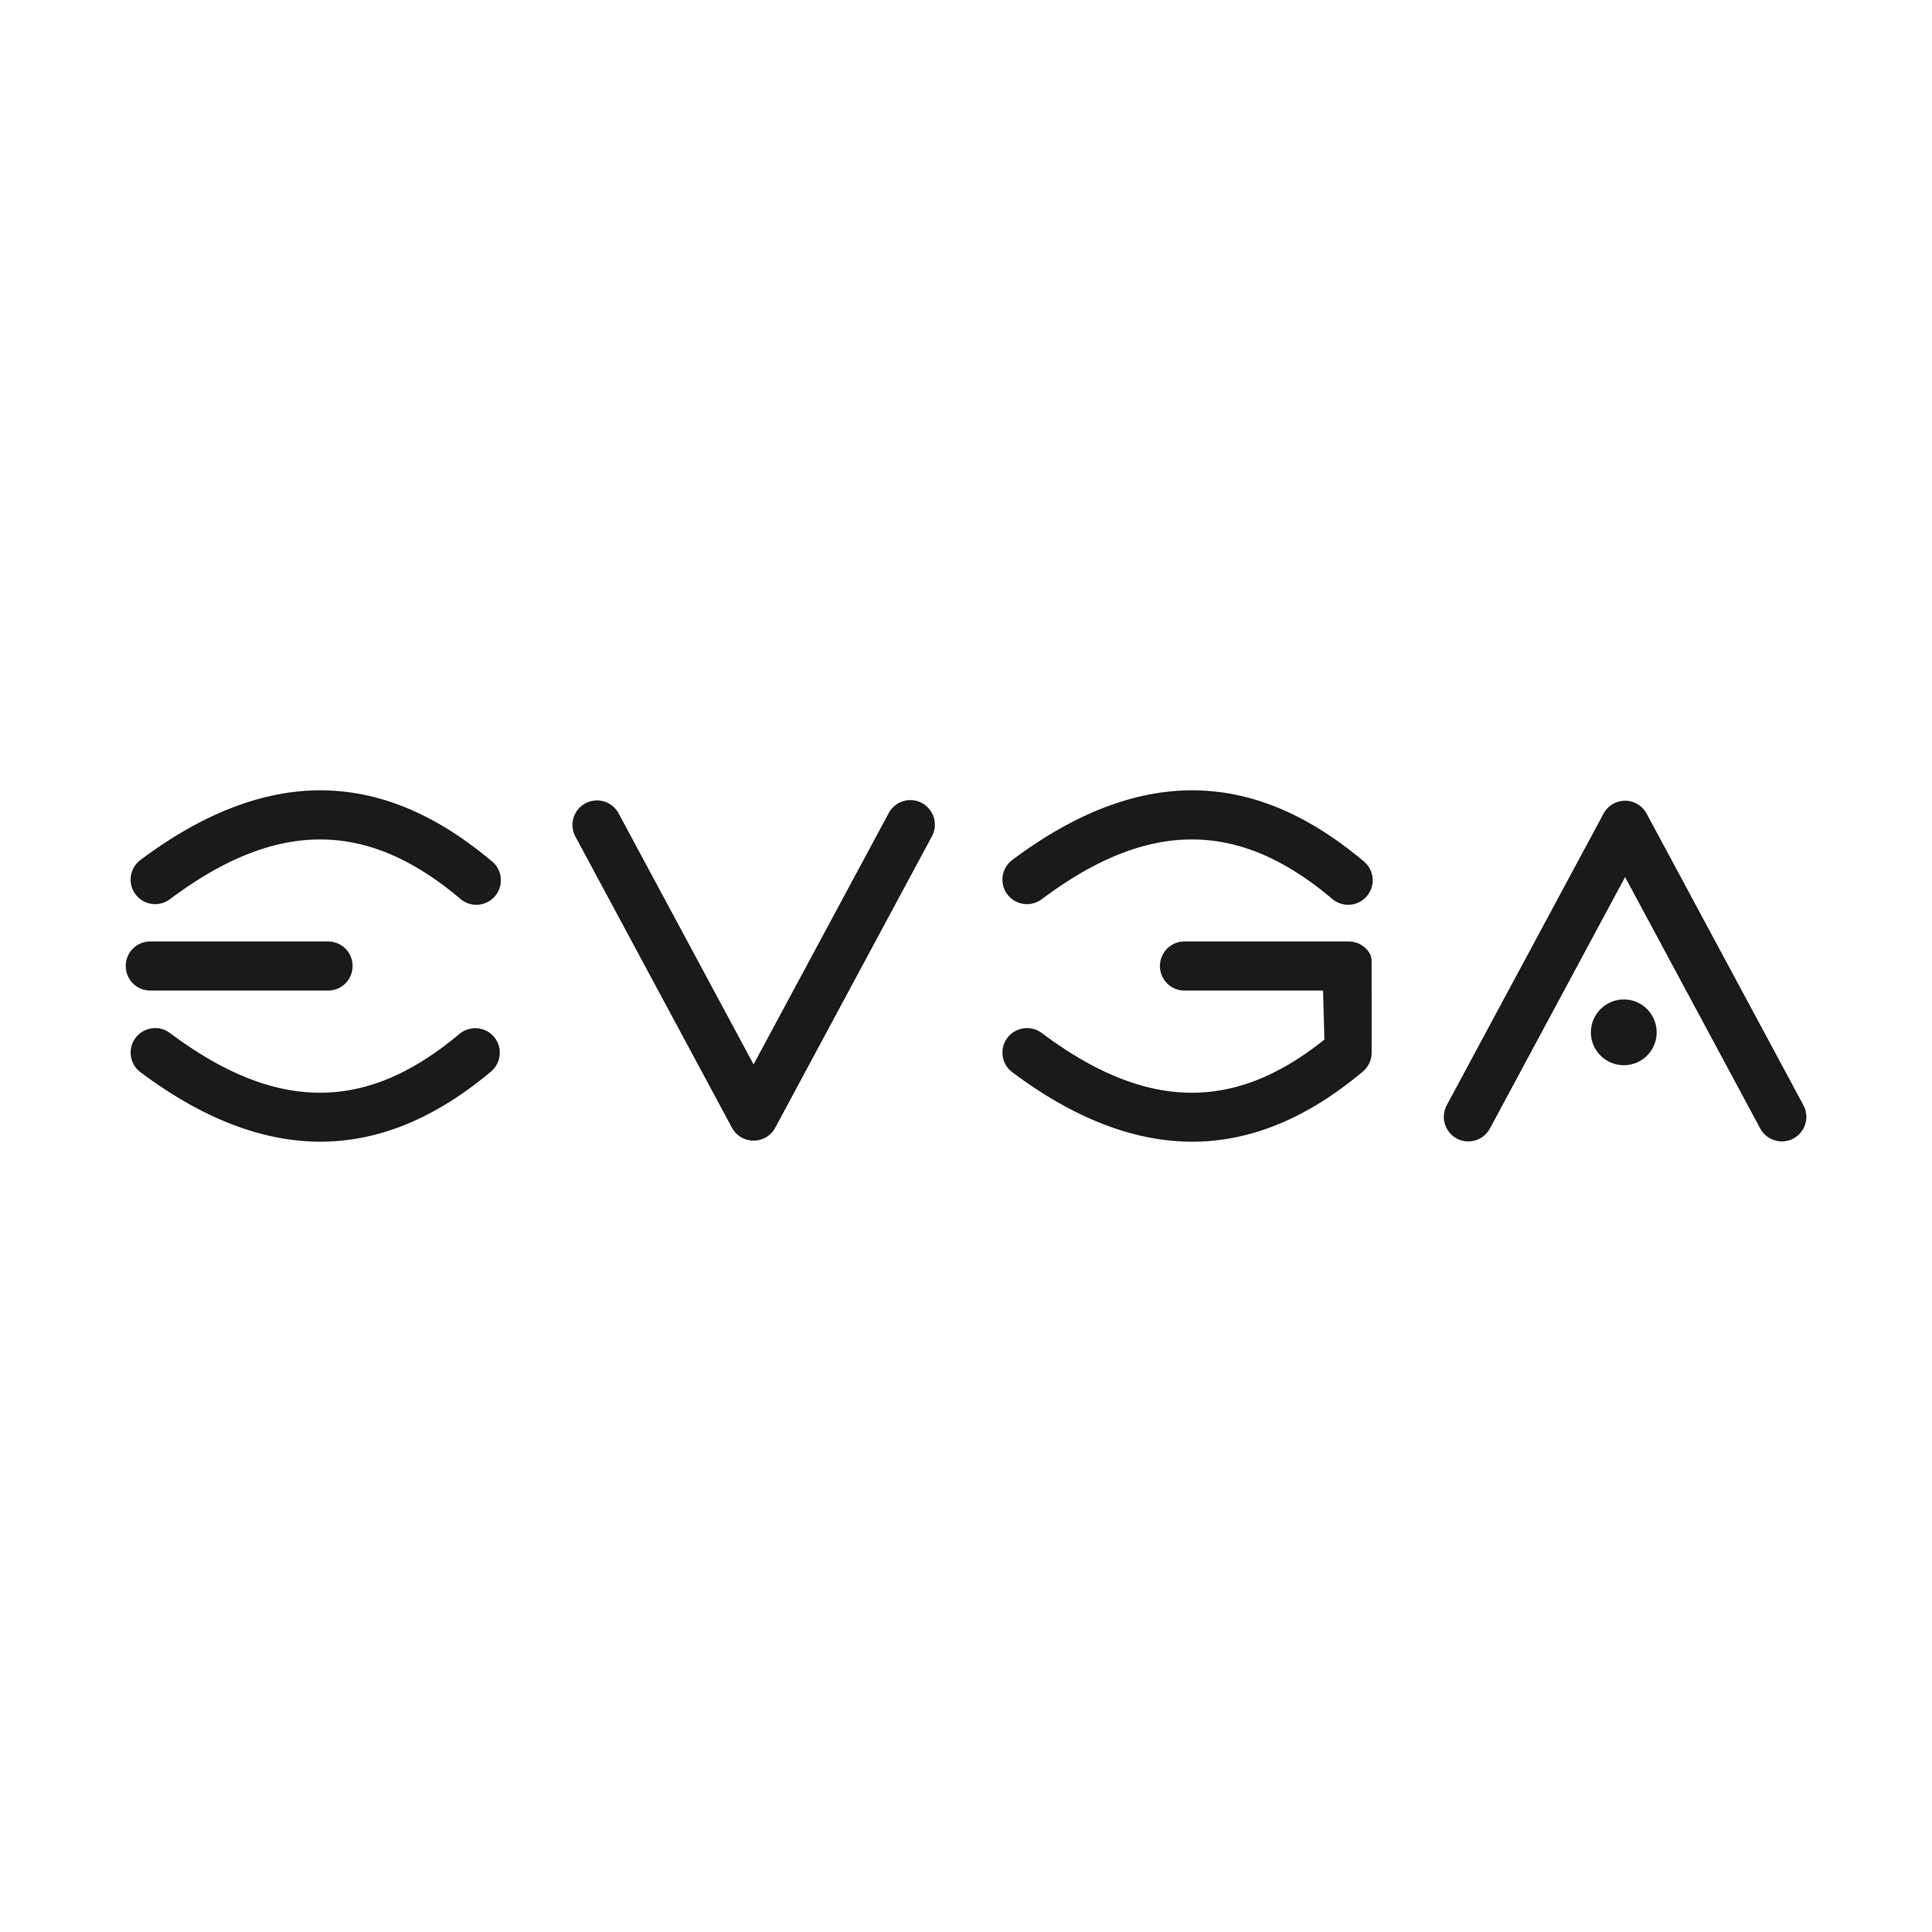 evga logo 0 - EVGA Logo